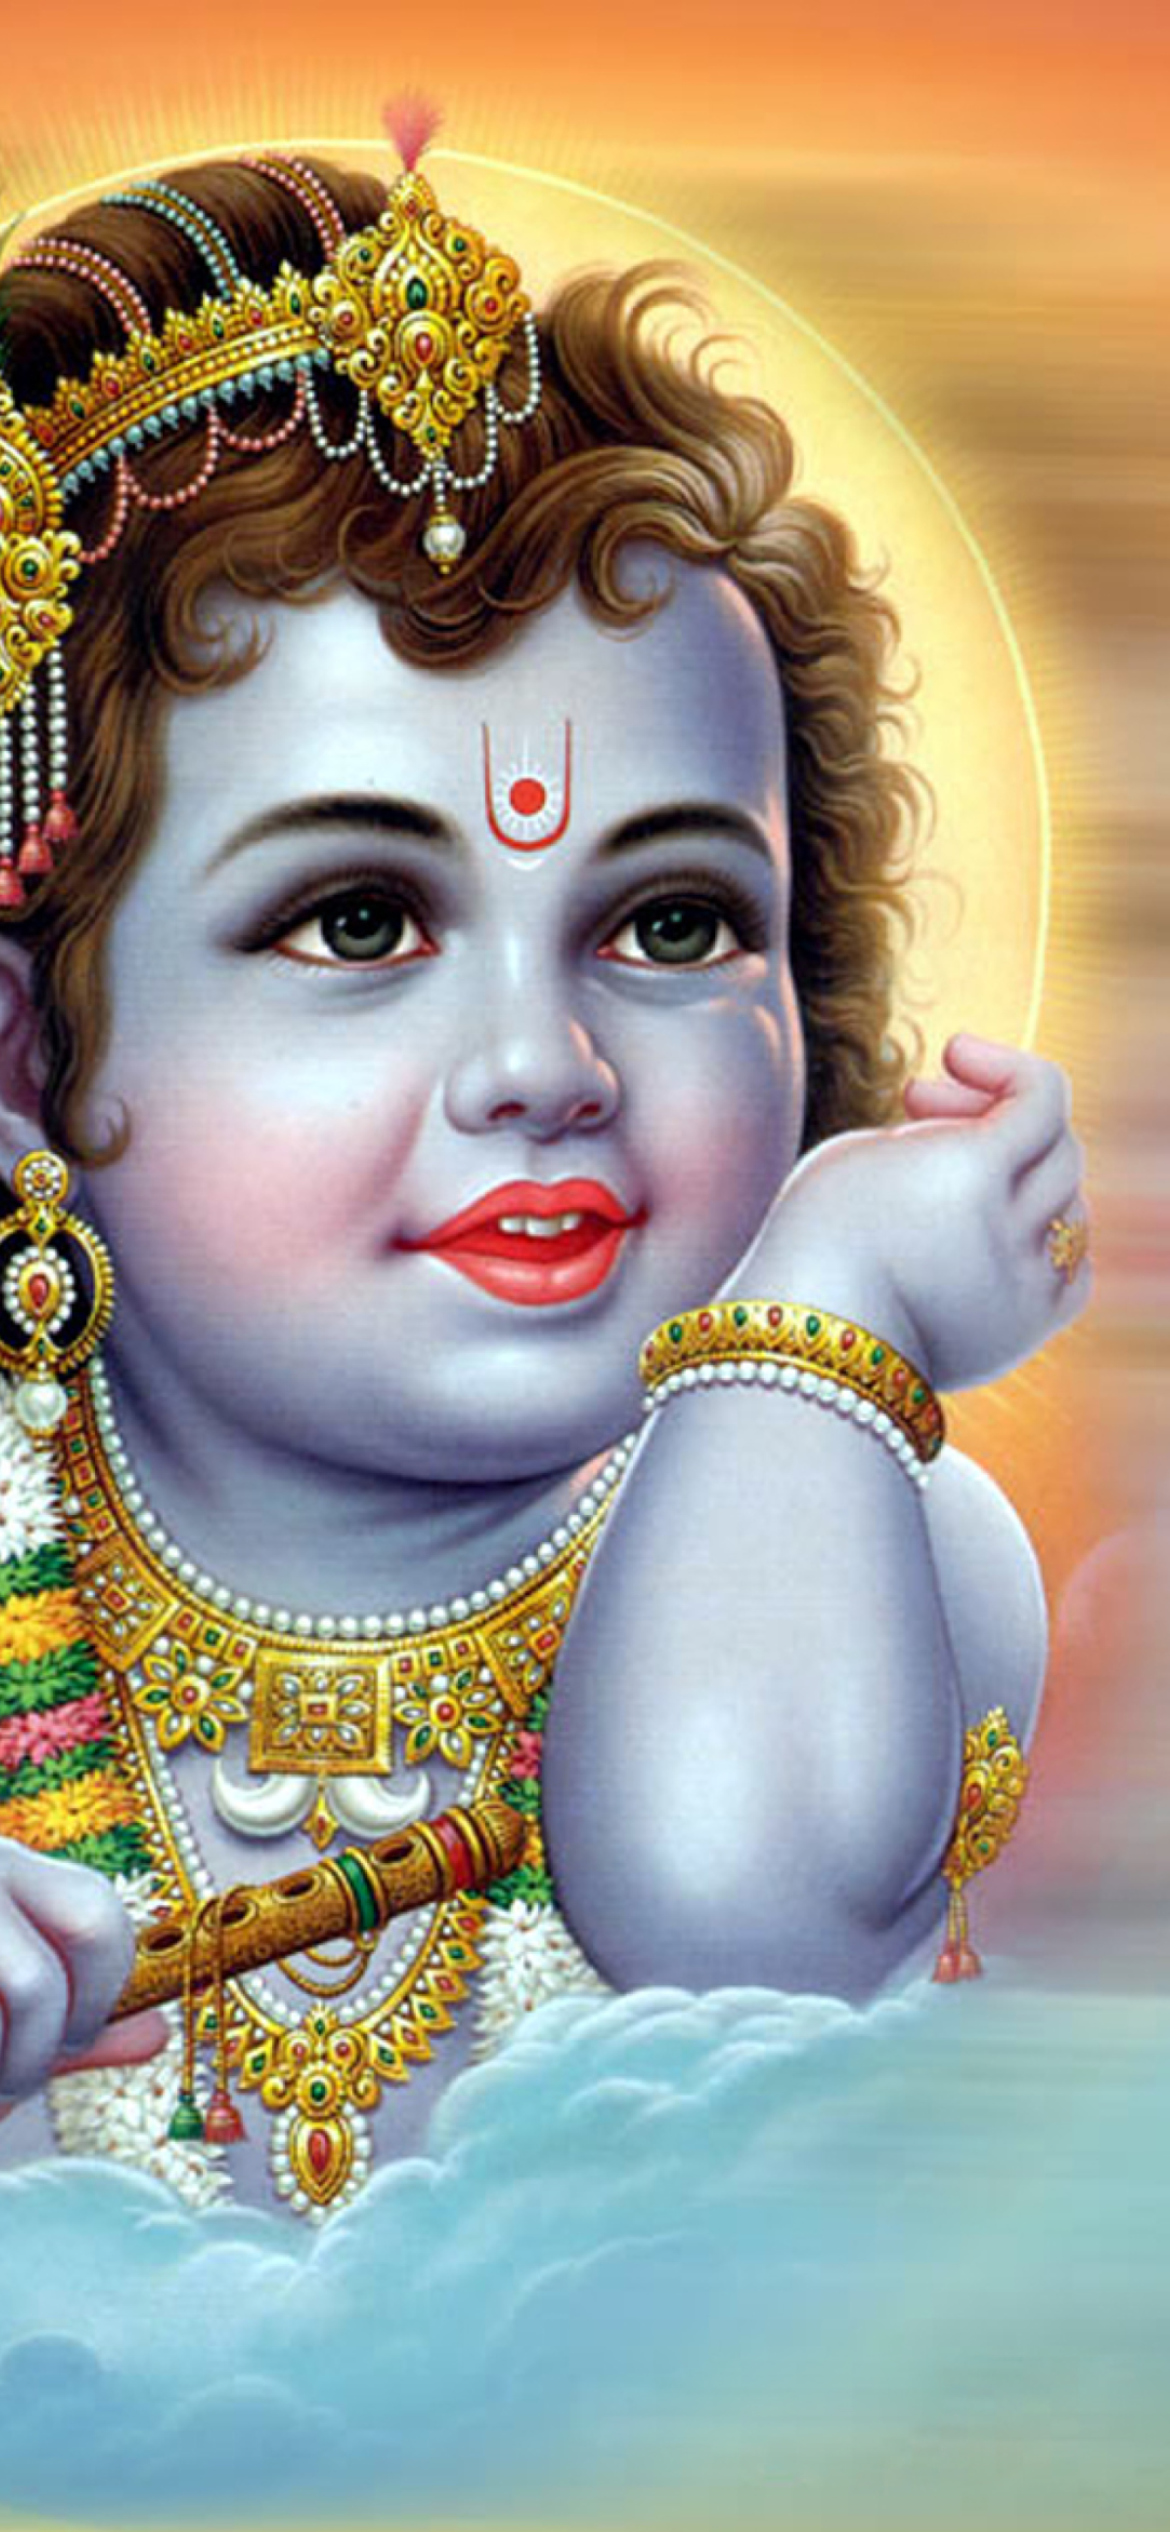 Lord Krishna Wallpaper for iPhone XR